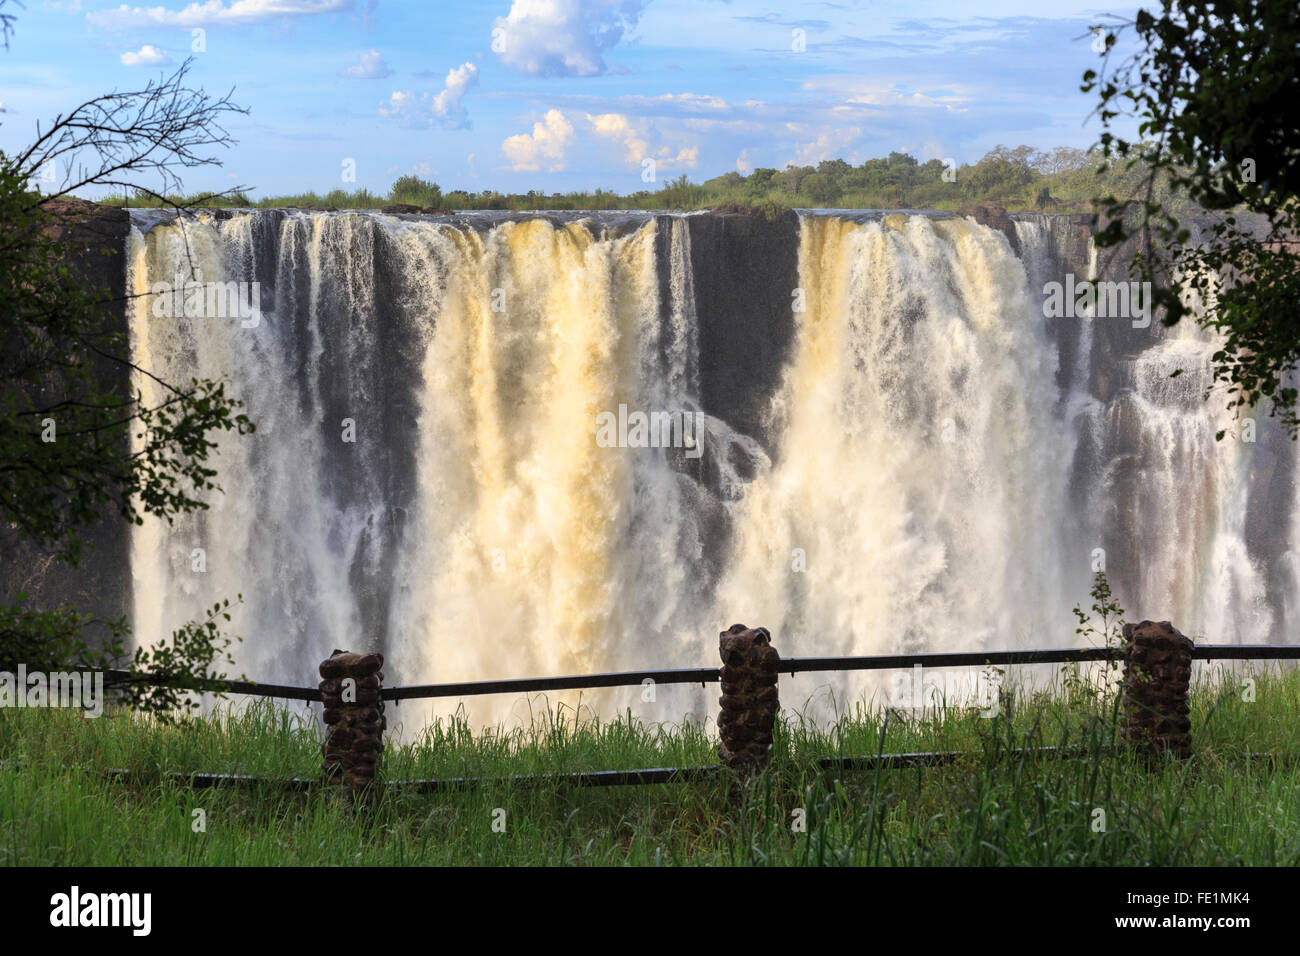 Victoria Falls, Zambia, Africa Stock Photo